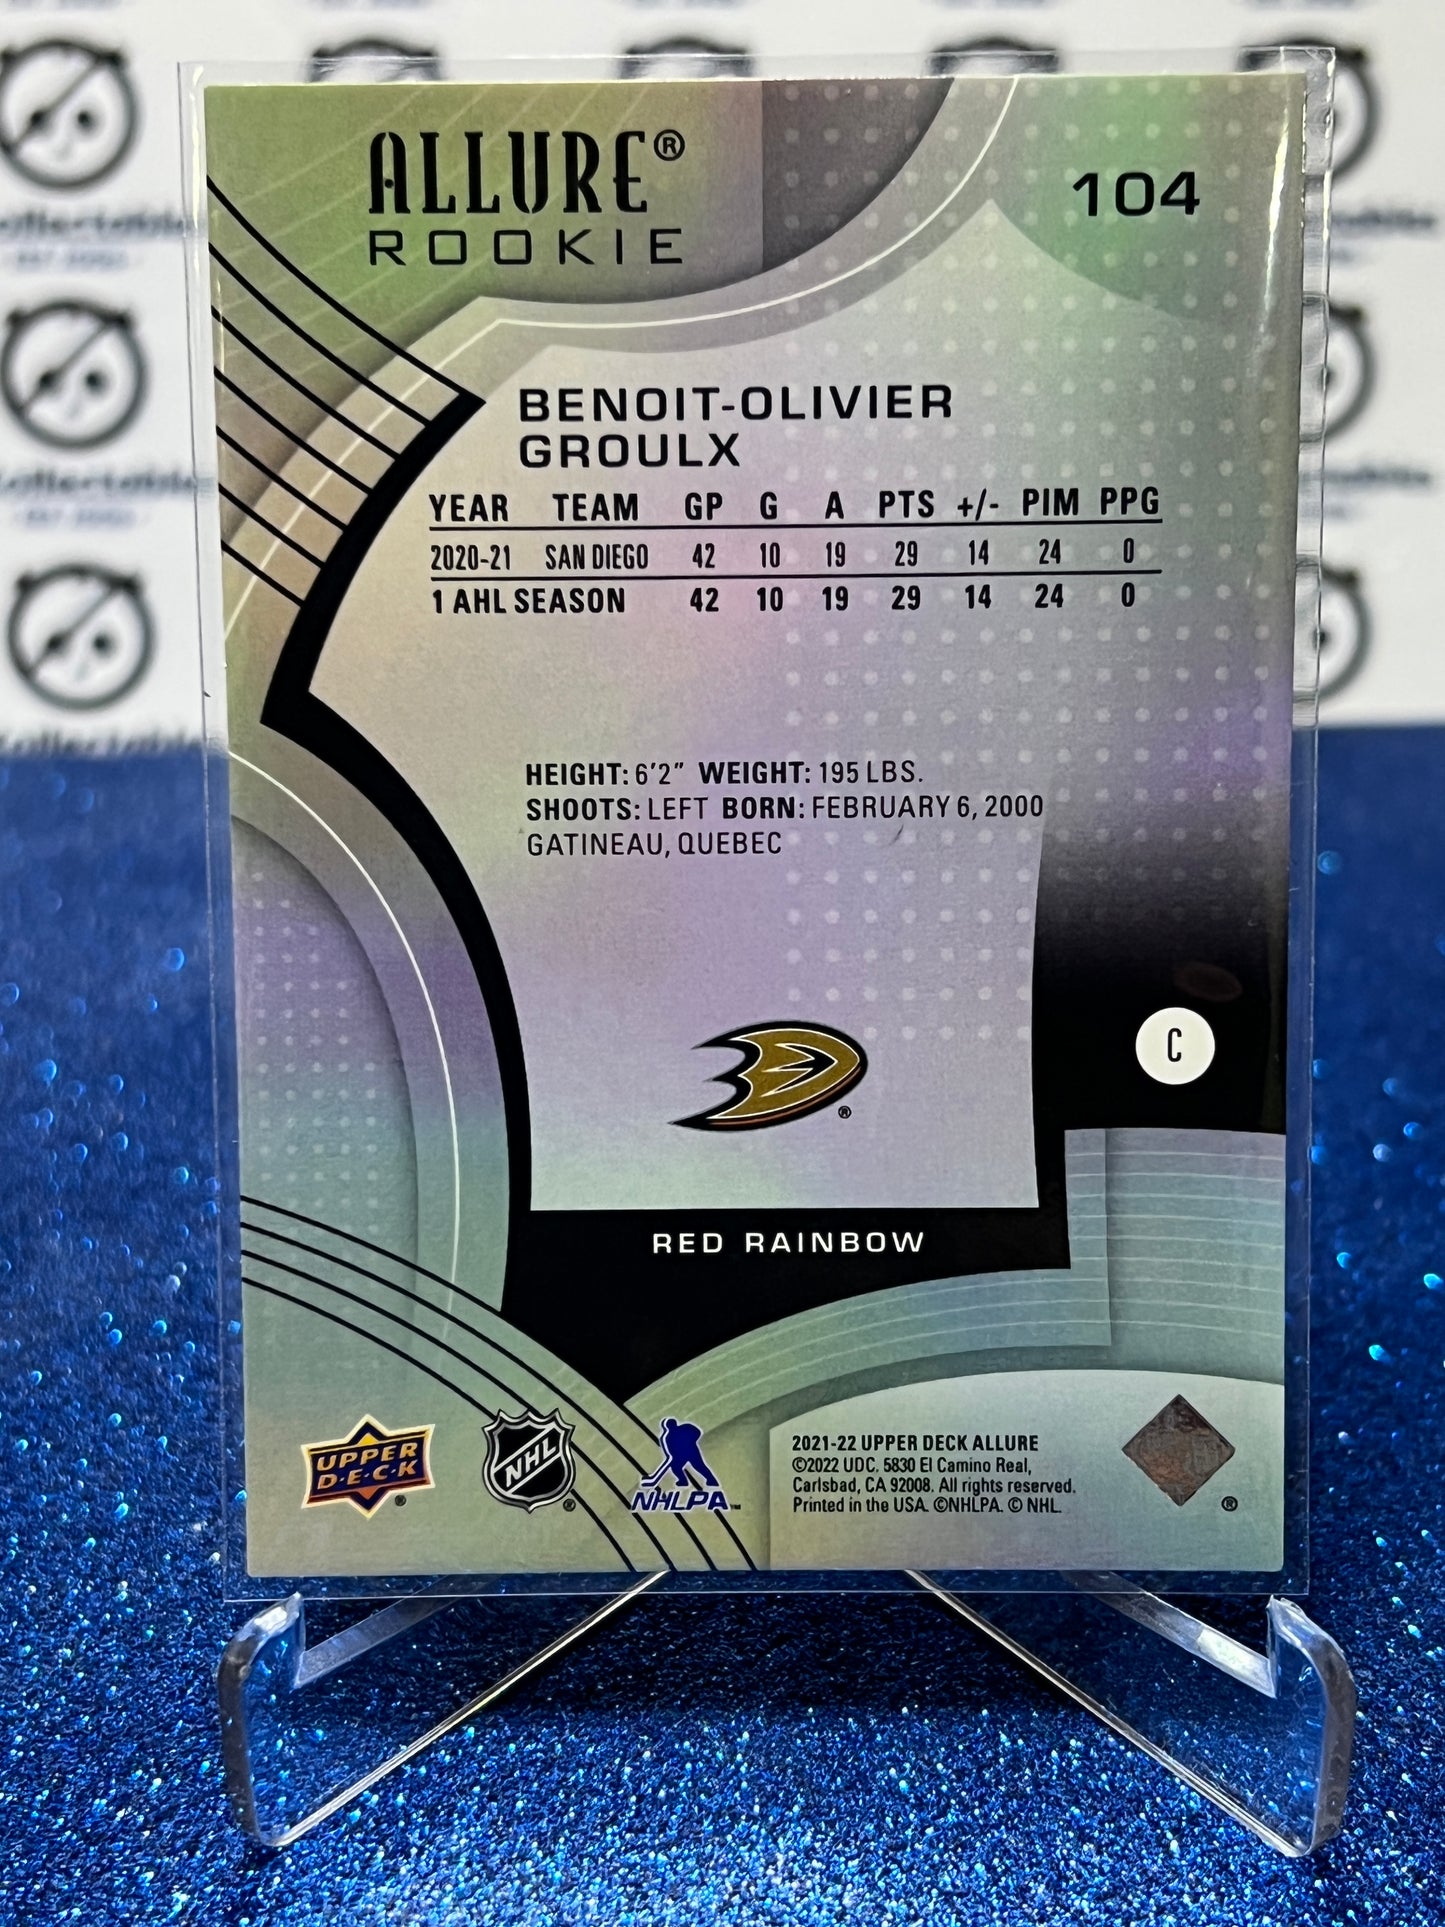 2021-22 UPPER DECK ALLURE BENOIT-OLIVIER GROULX # 104 ROOKIE RED RAINBOW ANAHEIM DUCKS NHL HOCKEY CARD